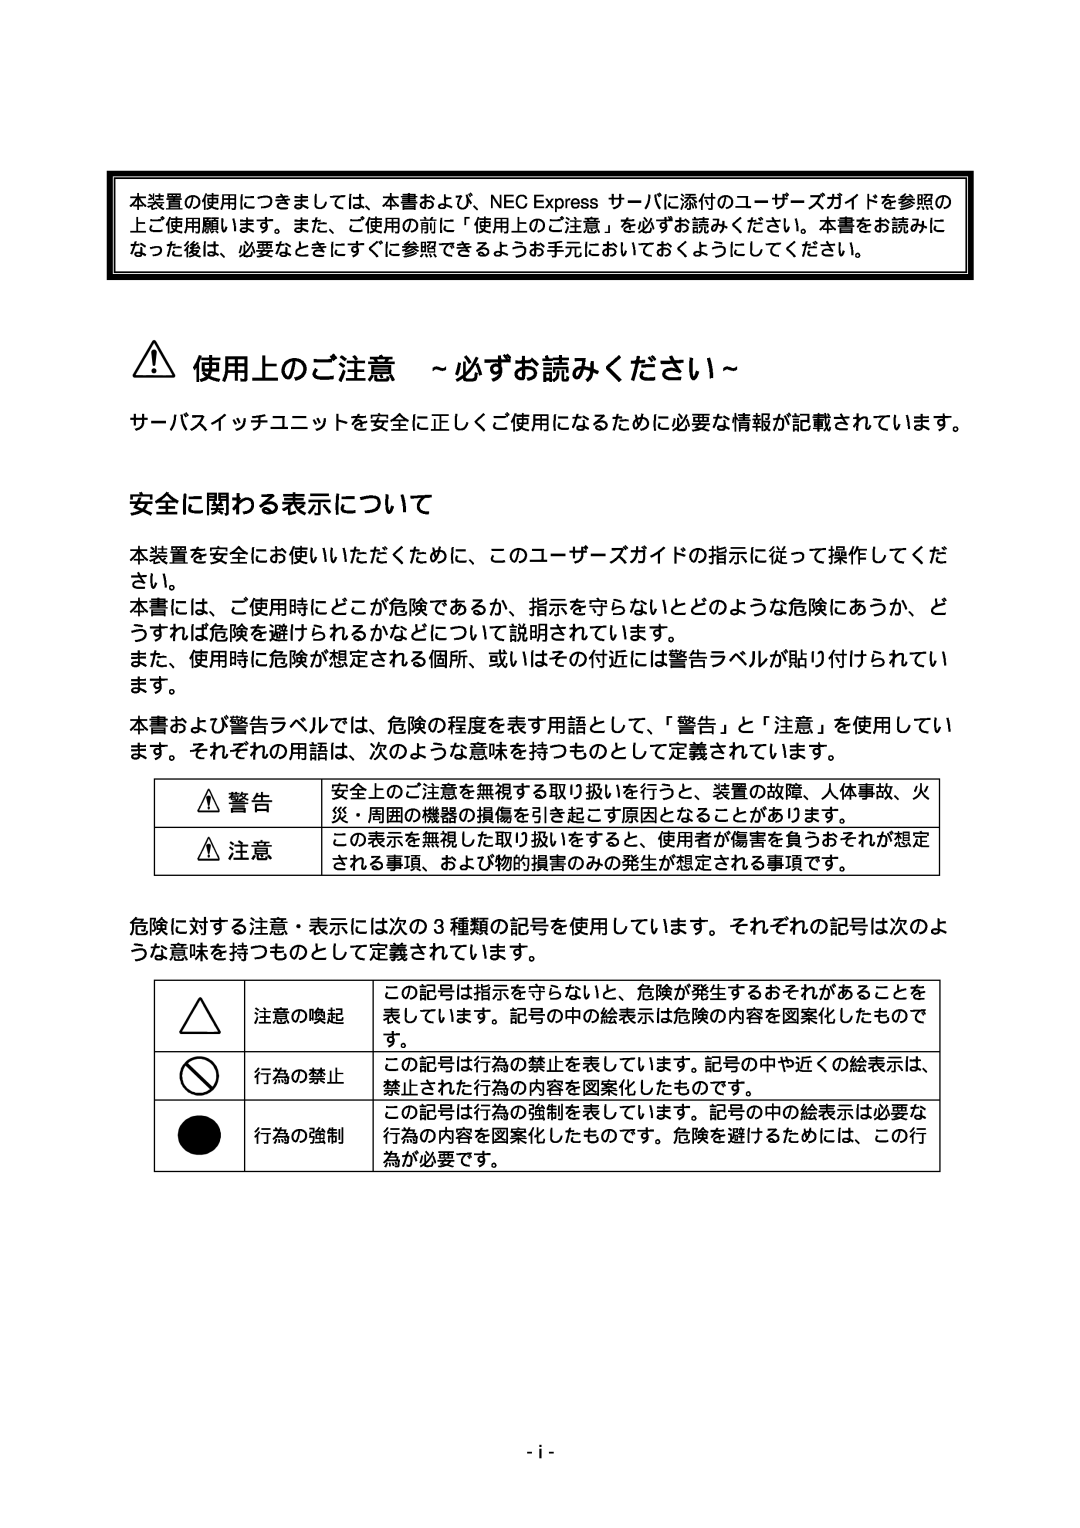 NEC N8191-09 manual 使用上のご注意 ～必ずお読みください～, 安全に関わる表示について 